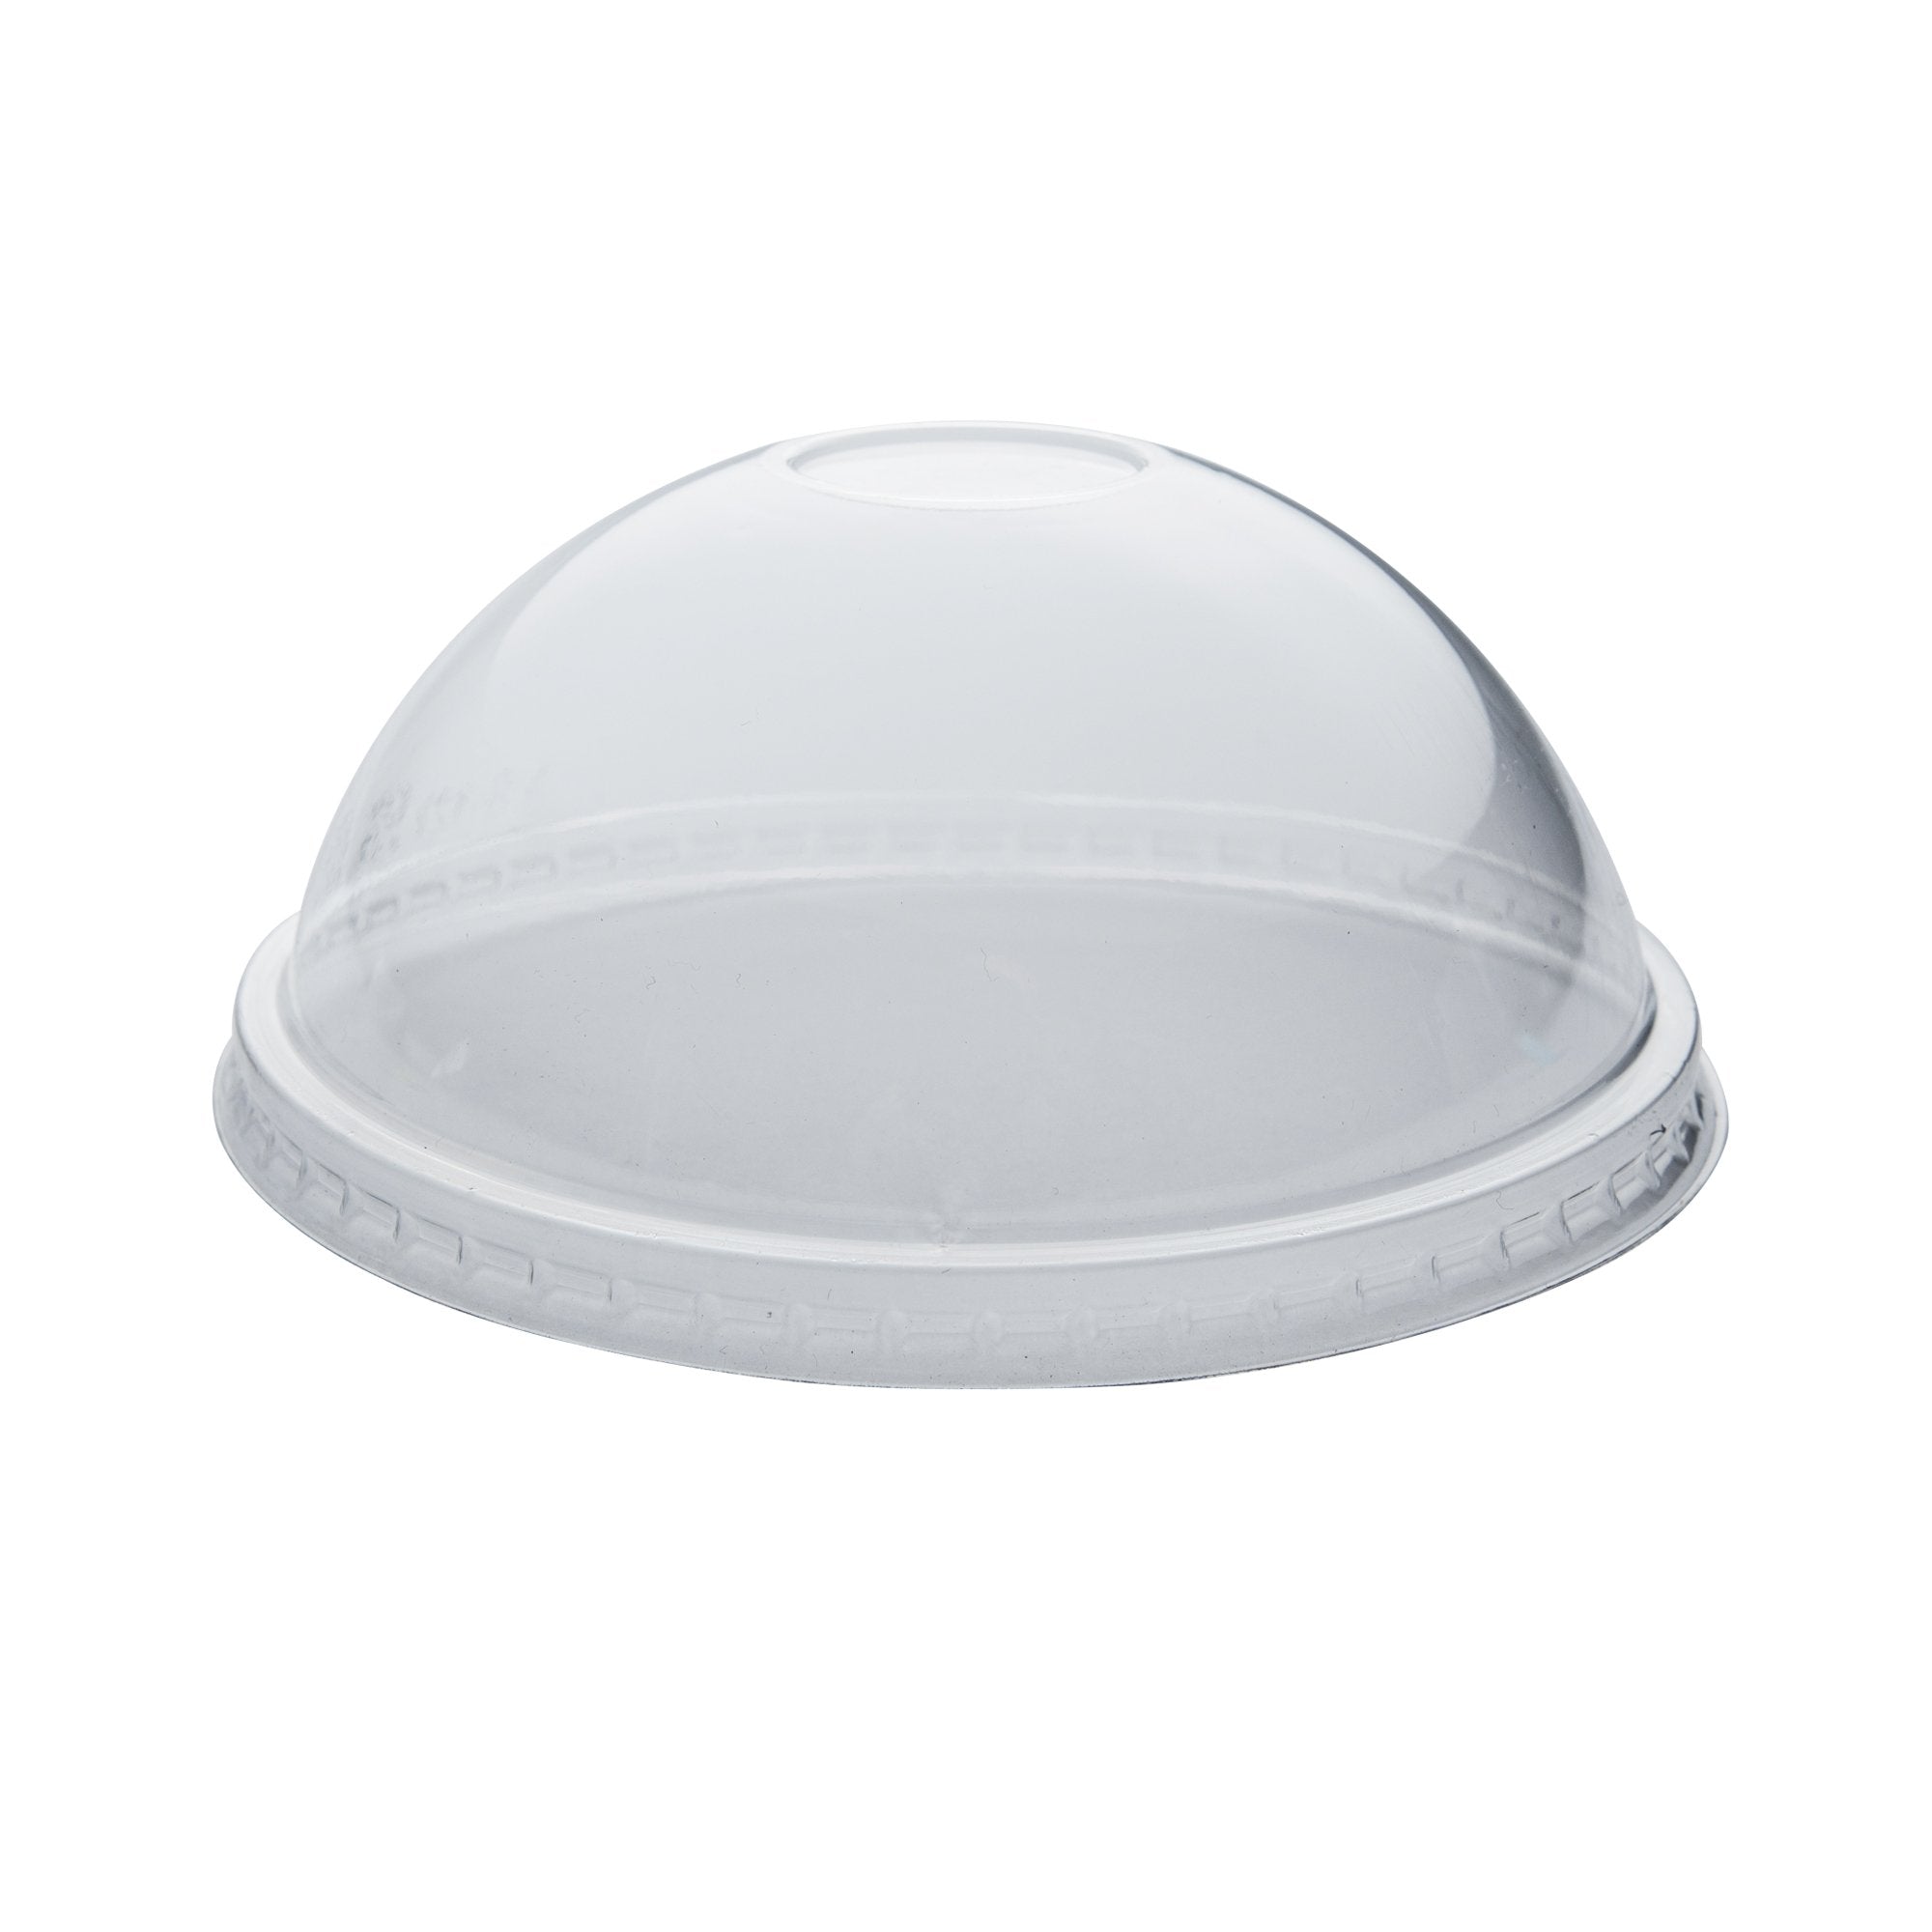 Yogurt/Soup Cup PET Dome Lid 20 oz- Clear (600/case)